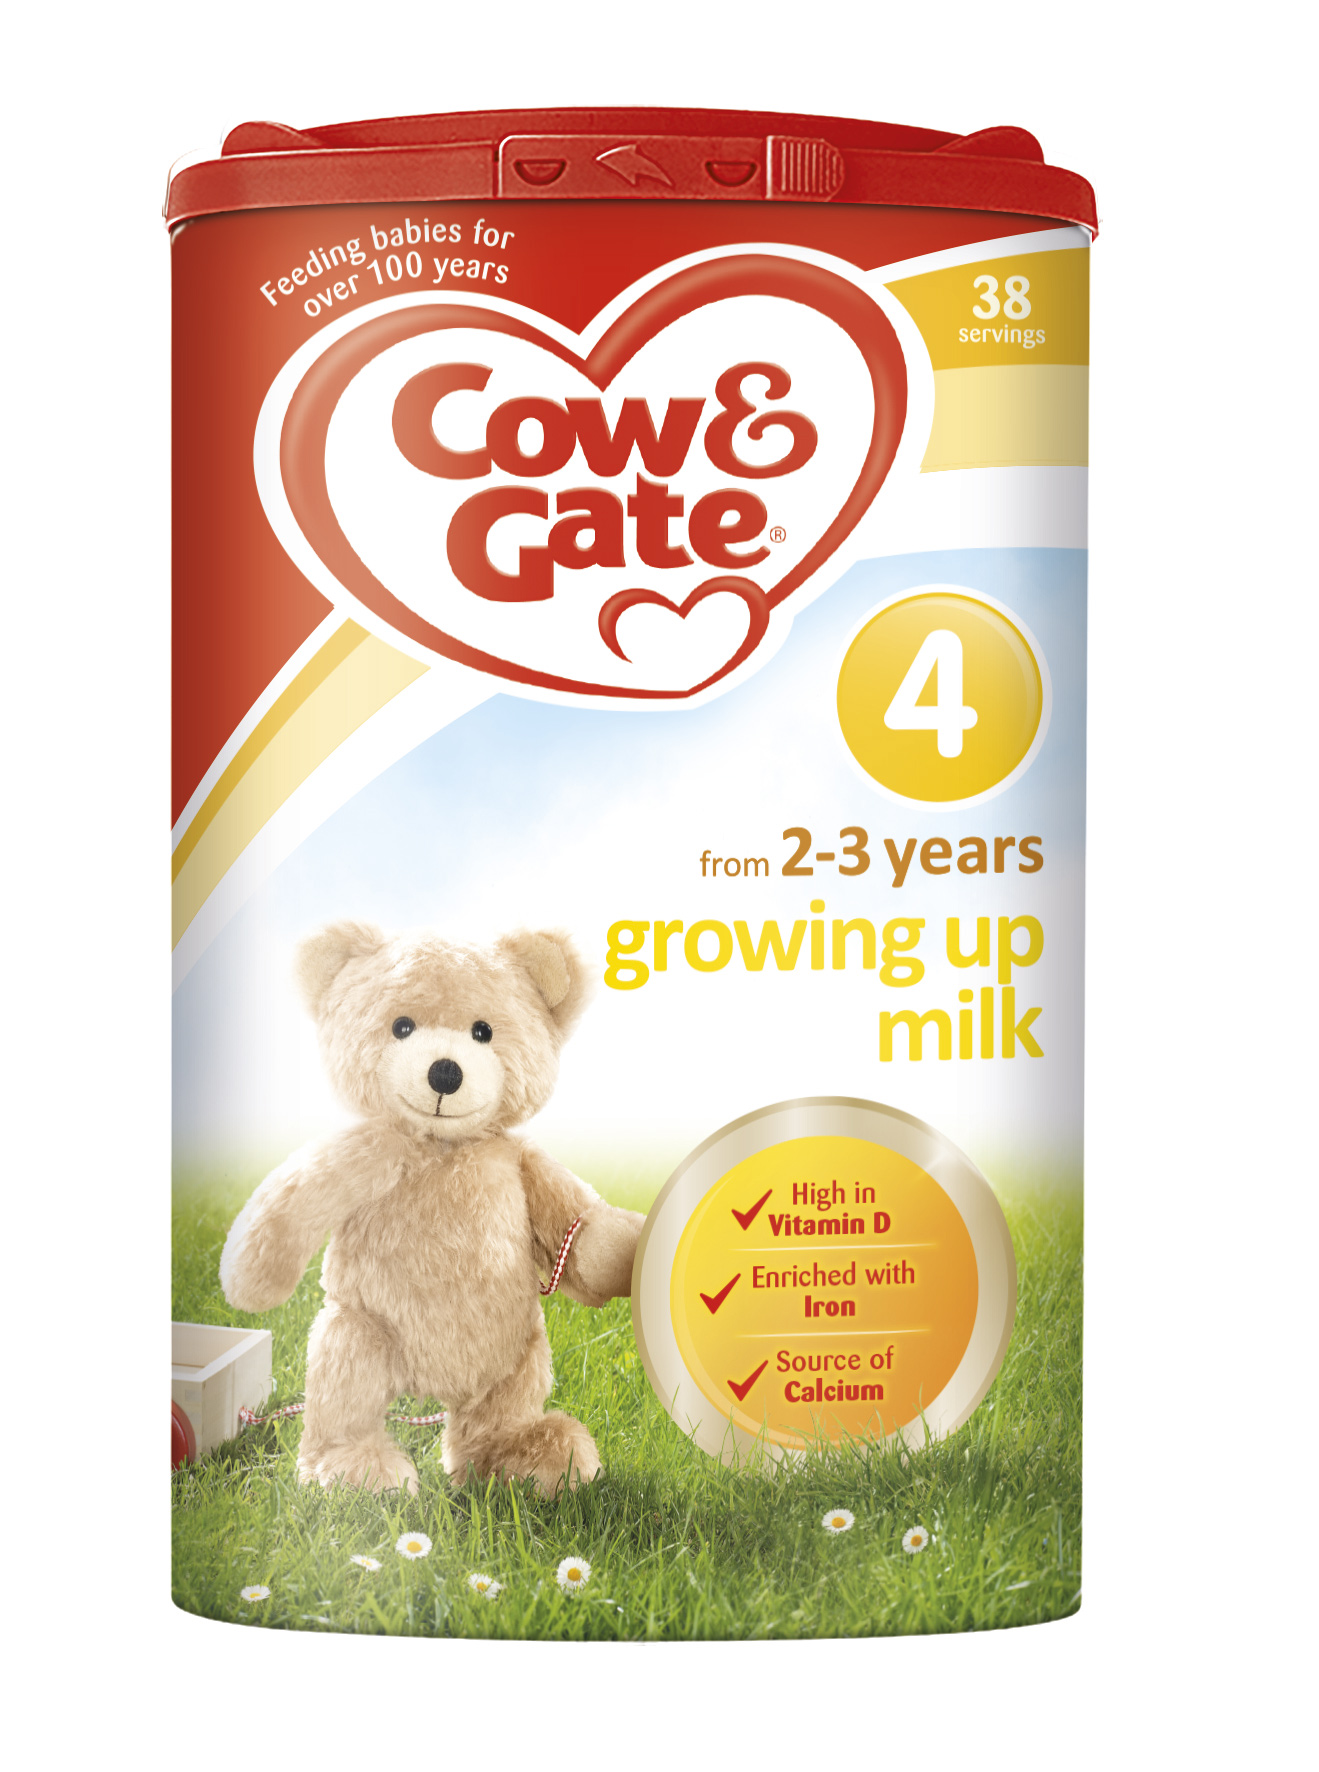 Cow & Gate ad campaign